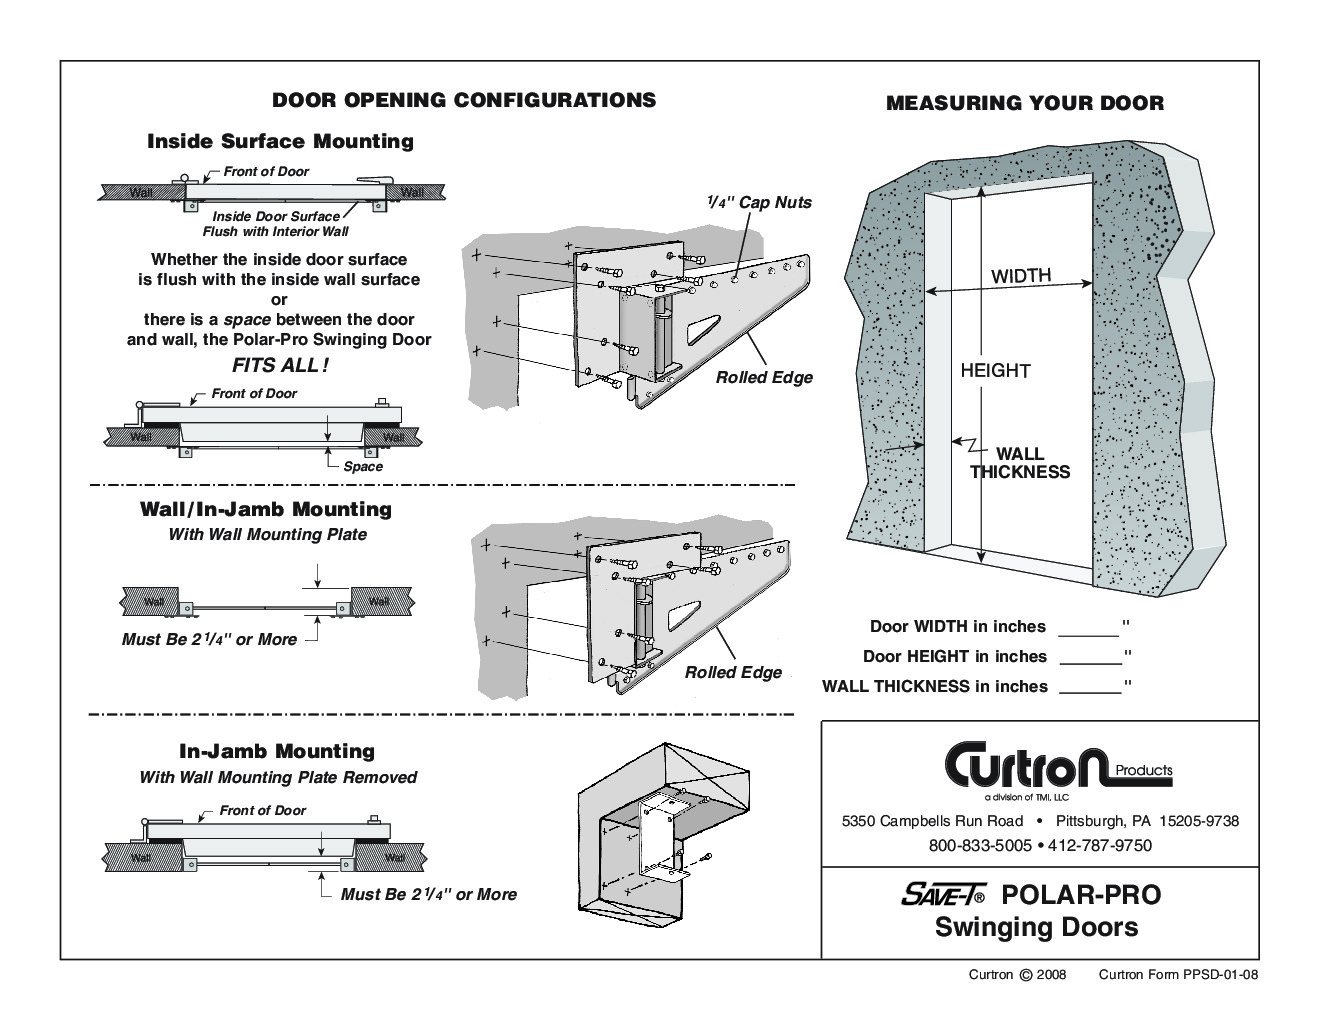 Curtron PP-C-080-3078 Flexible Cooler Freezer Door